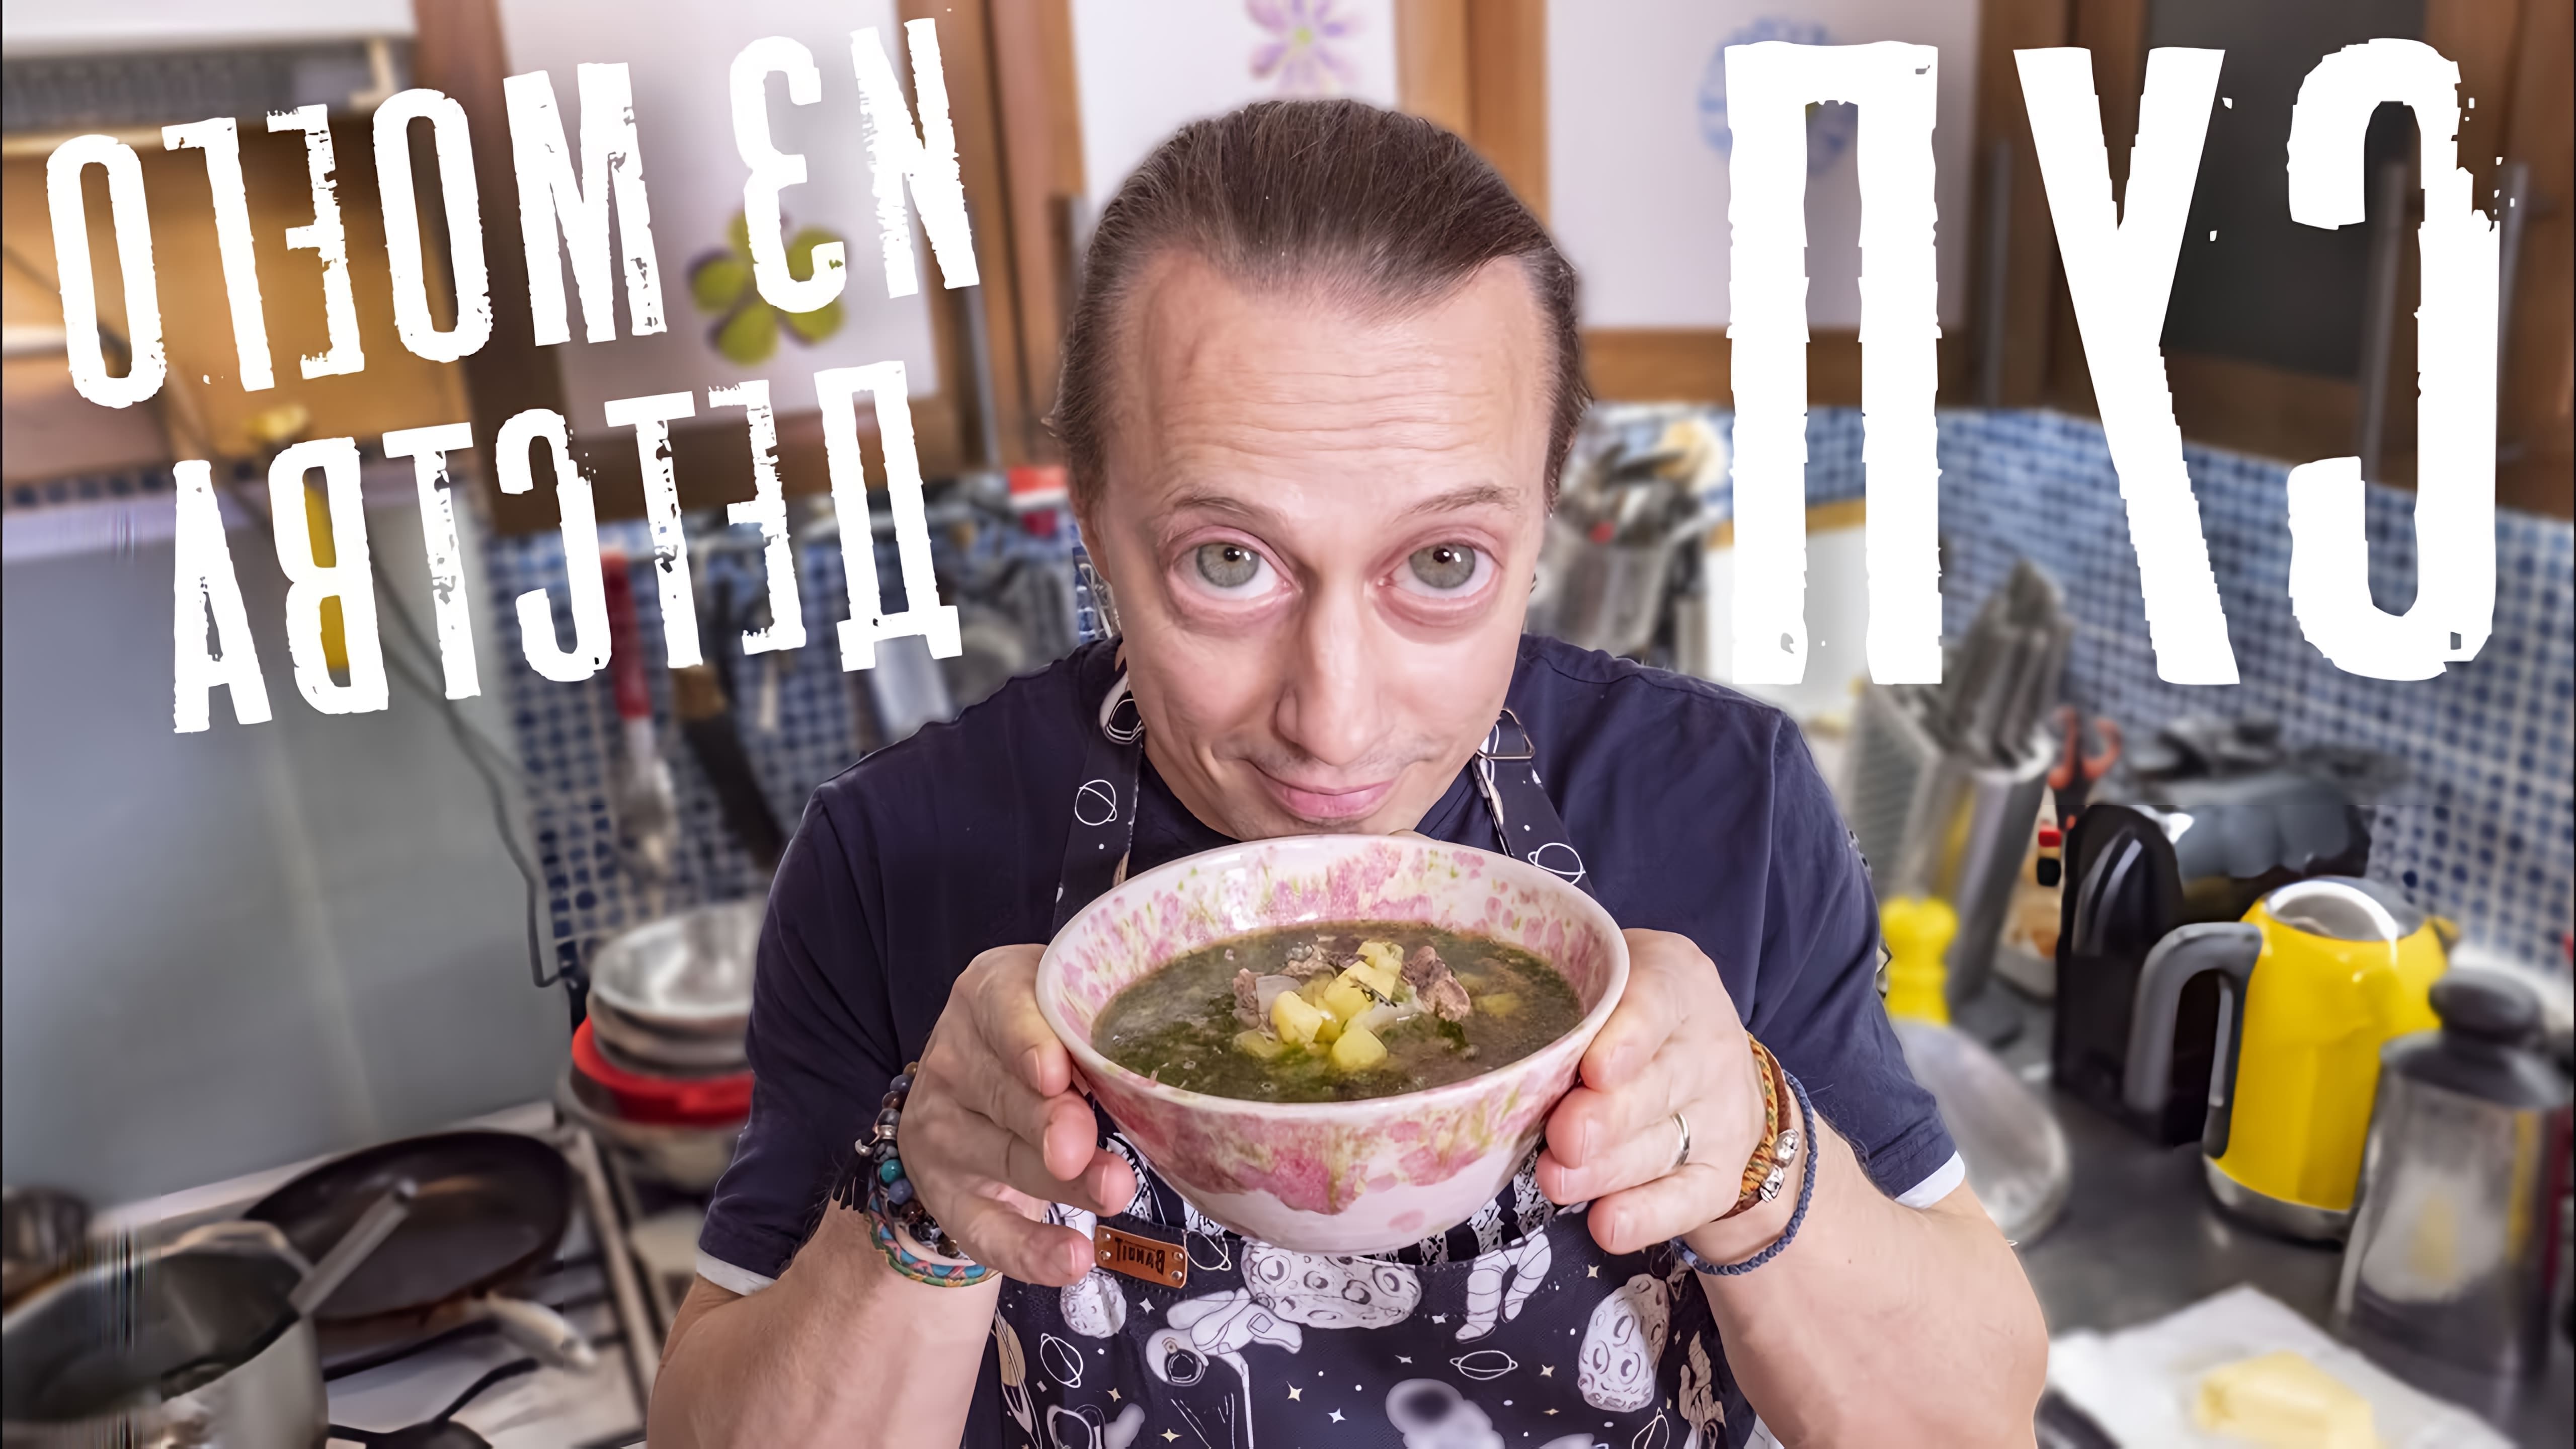 Видео посвящено приготовлению простого супа из семги и картофеля, который напоминает автору его детство